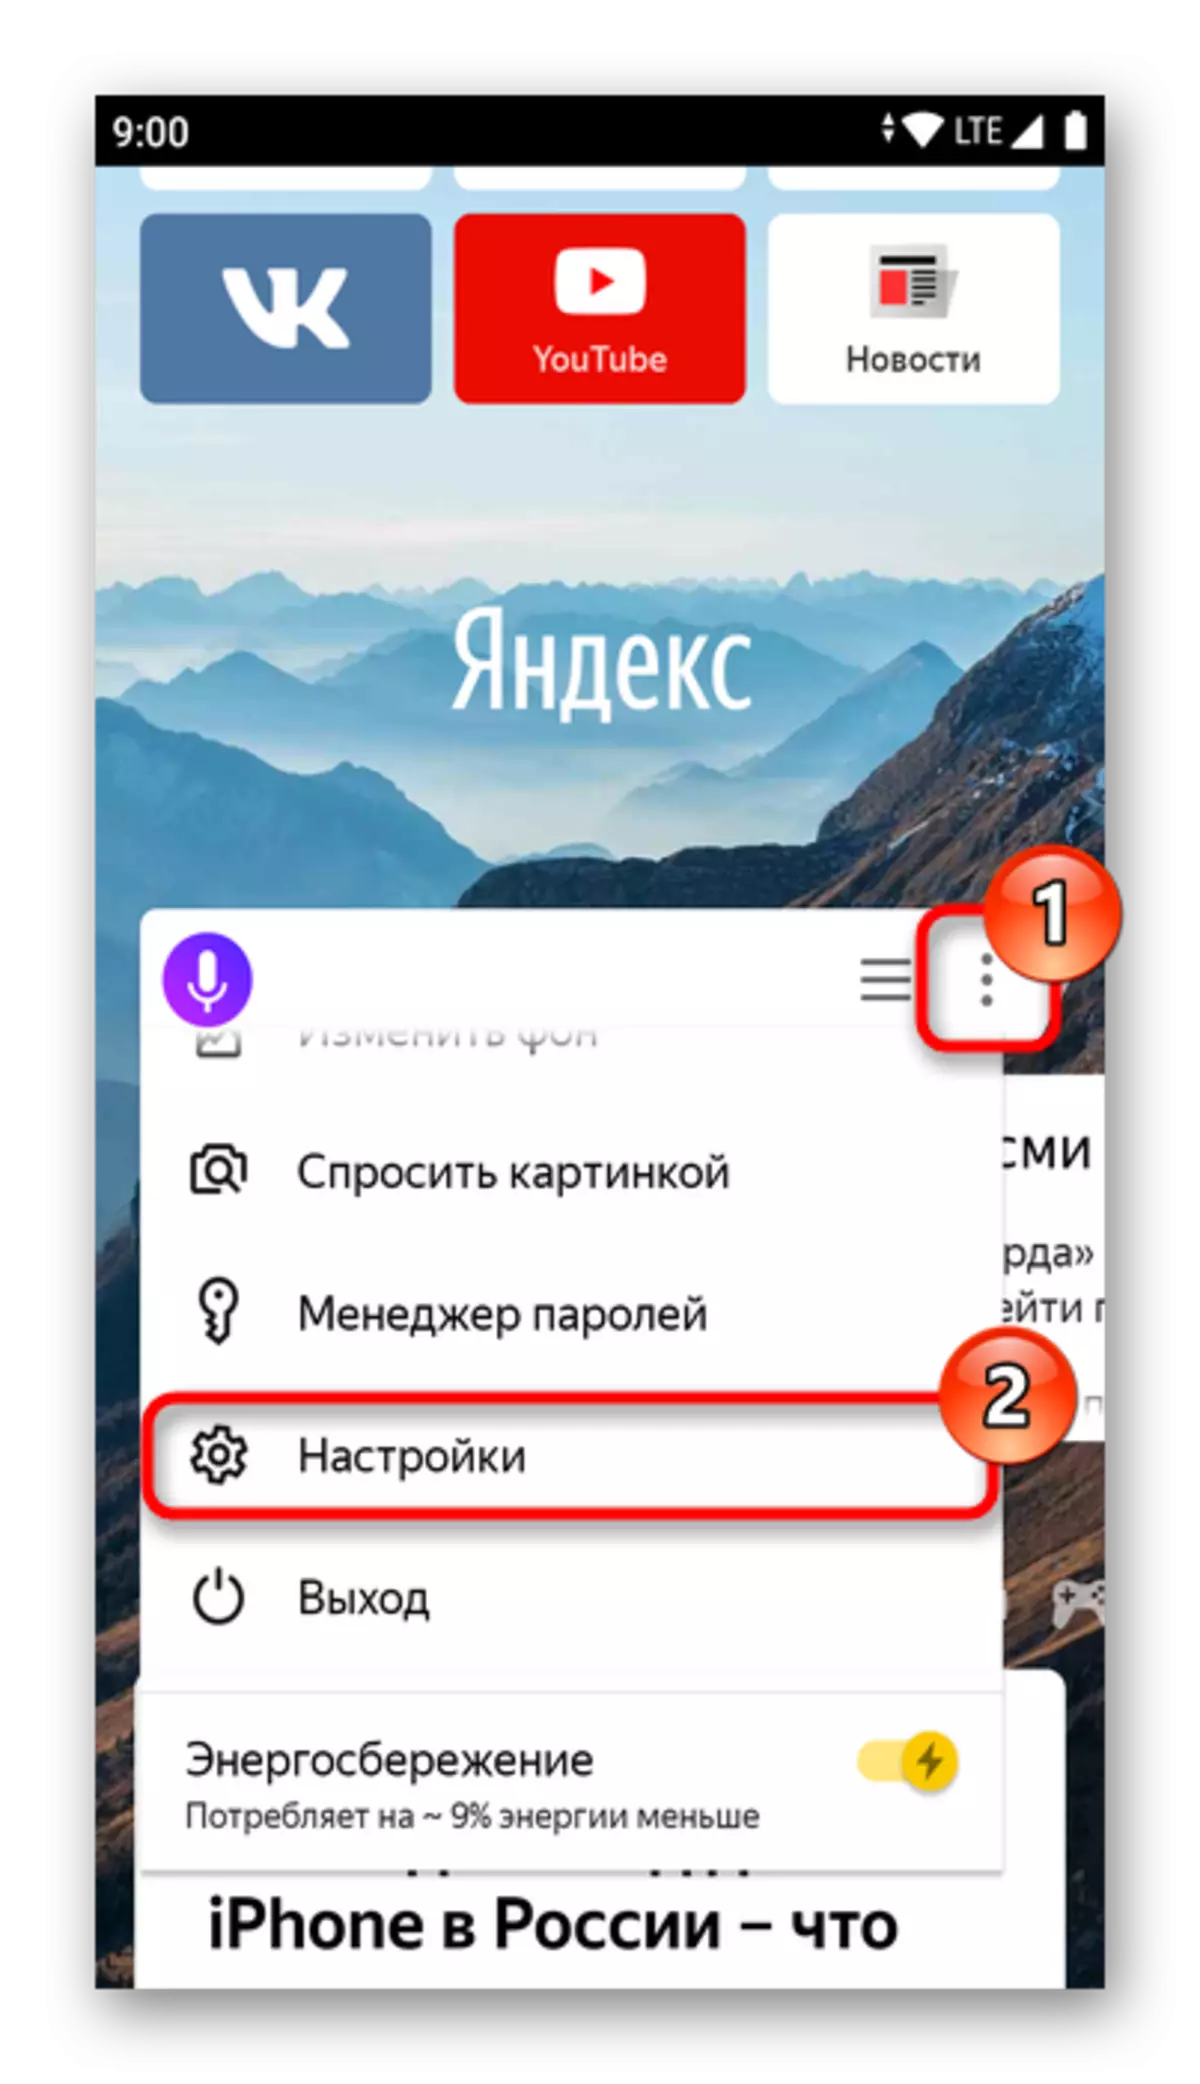 Mobil Yandex.Bauser sozlamalari menyusiga kiring